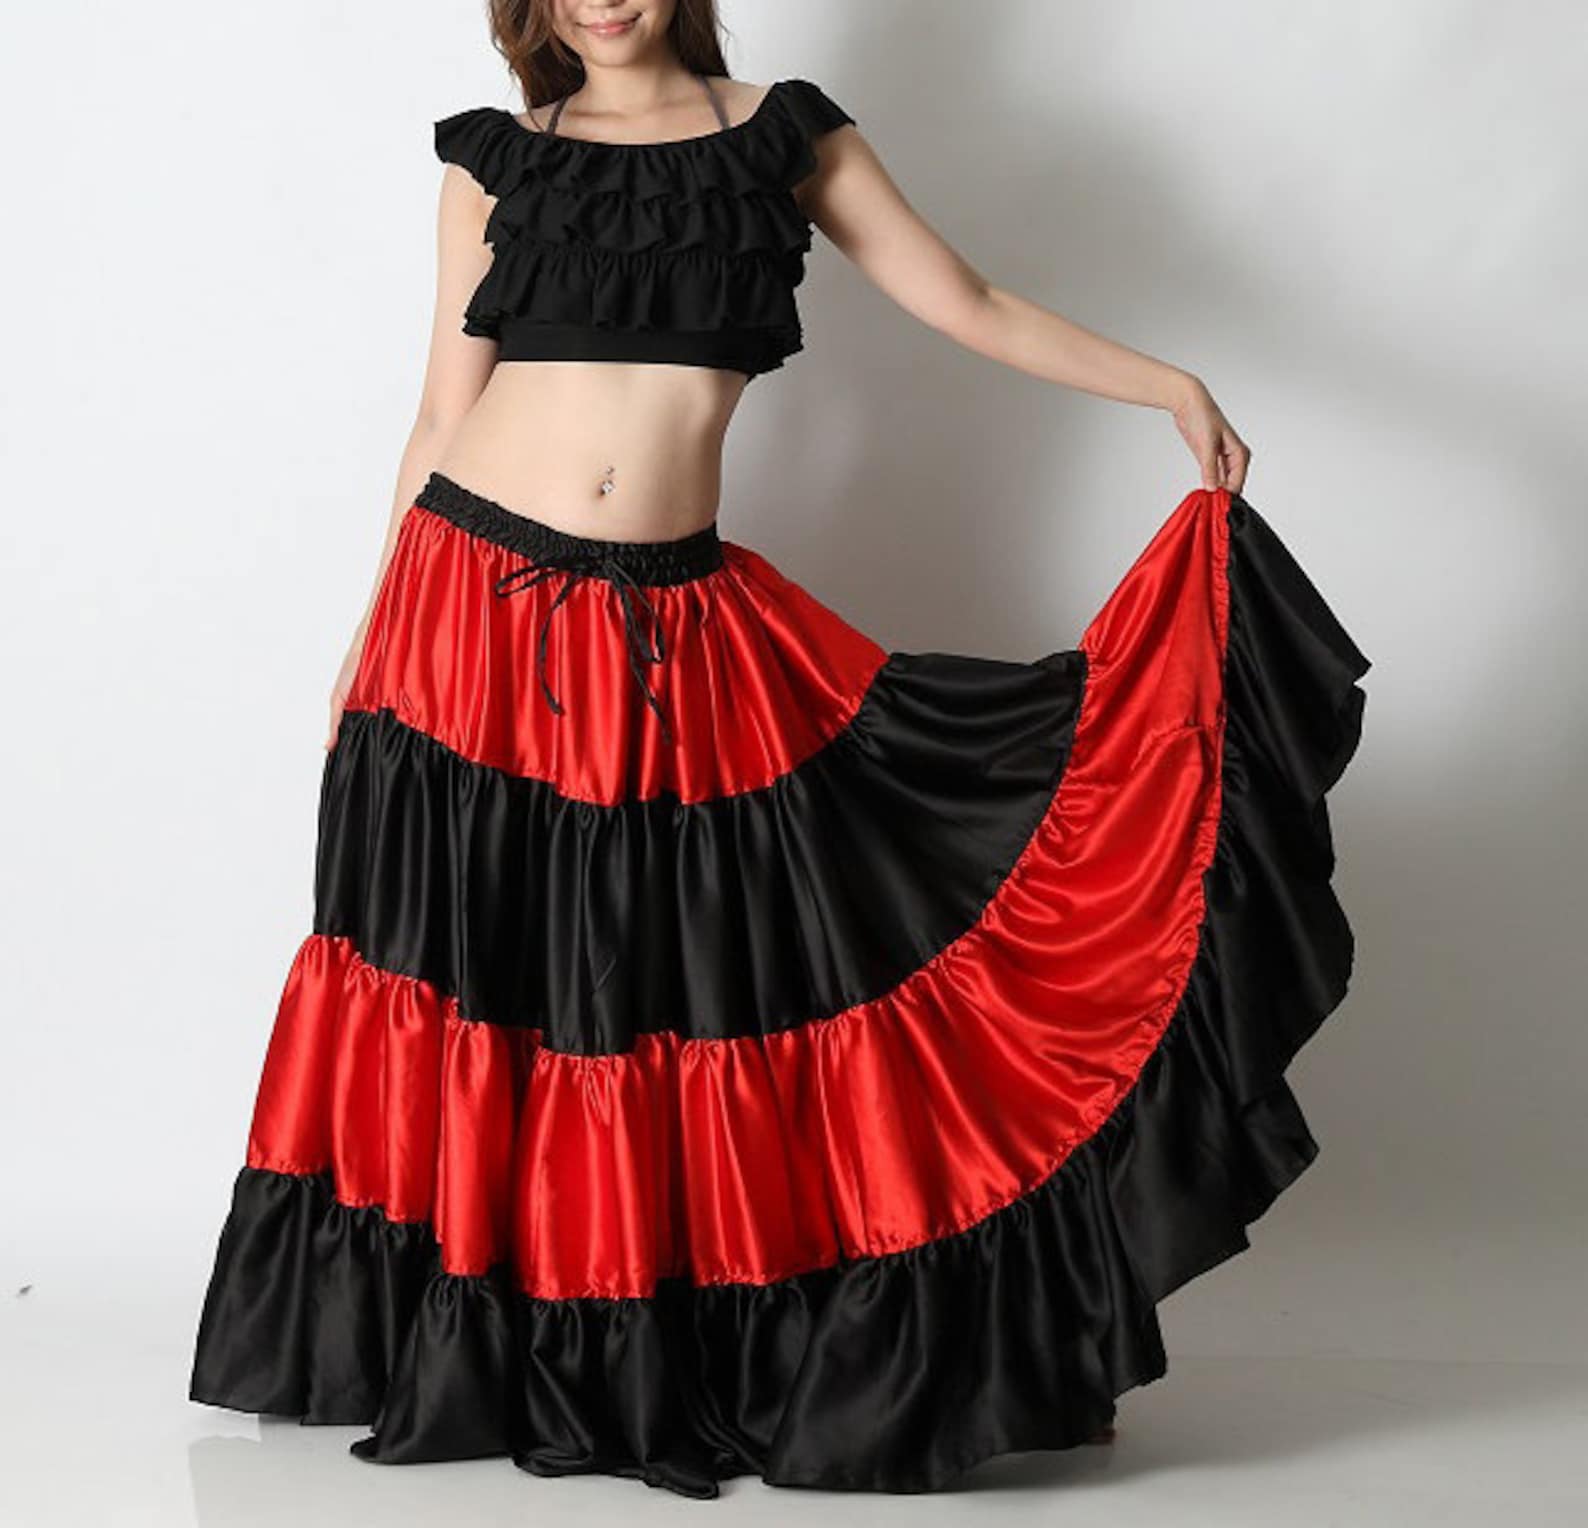 Купить цыганскую юбку. Цыганская юбка. Цыганская юбка для танца. Цыганская юбка с воланами. Юбка цыганская с оборкой.